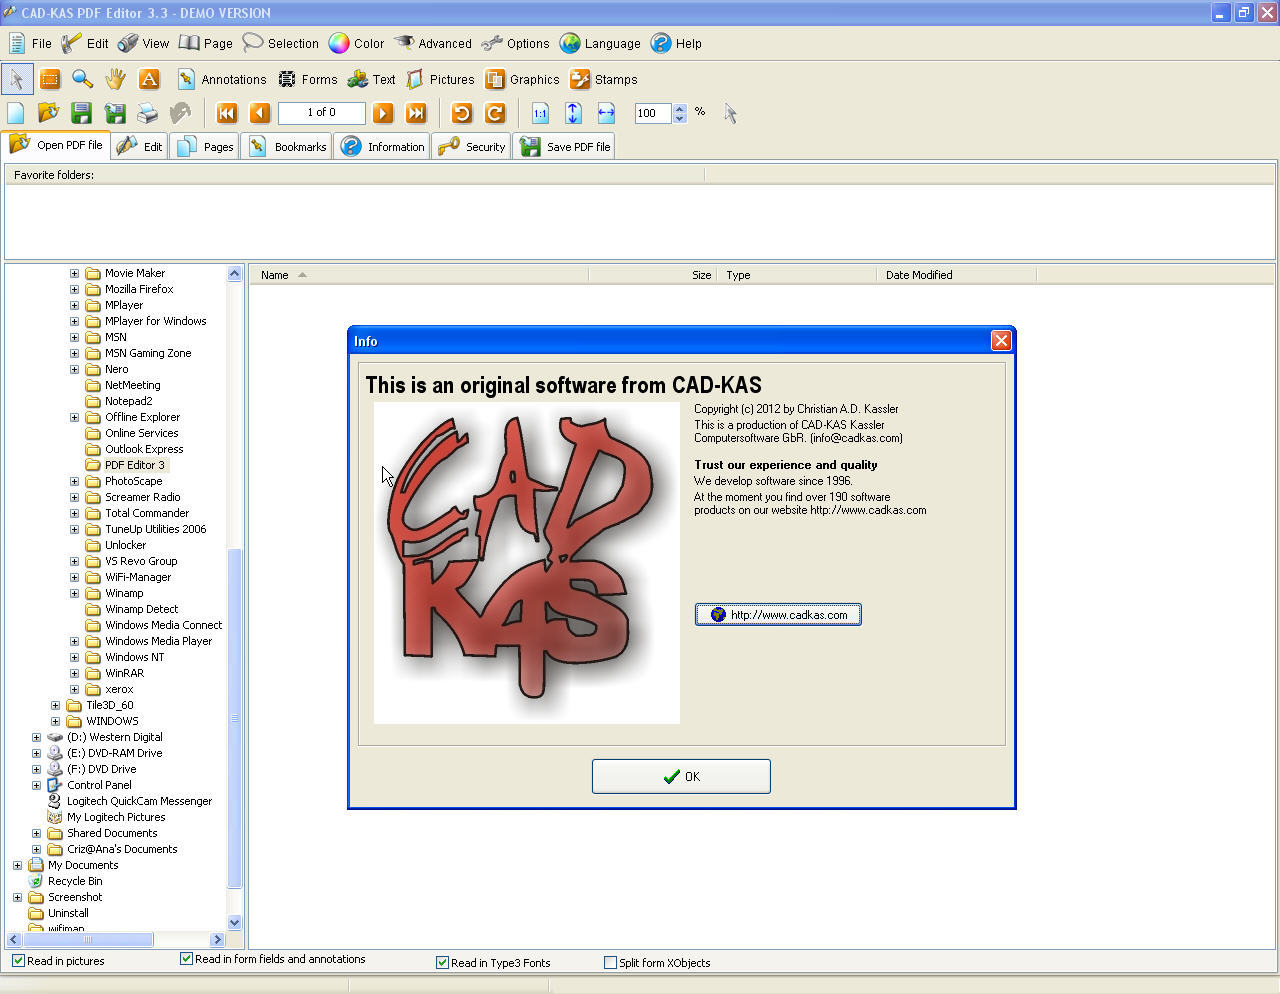 PDF Editor 3.3 : Main window